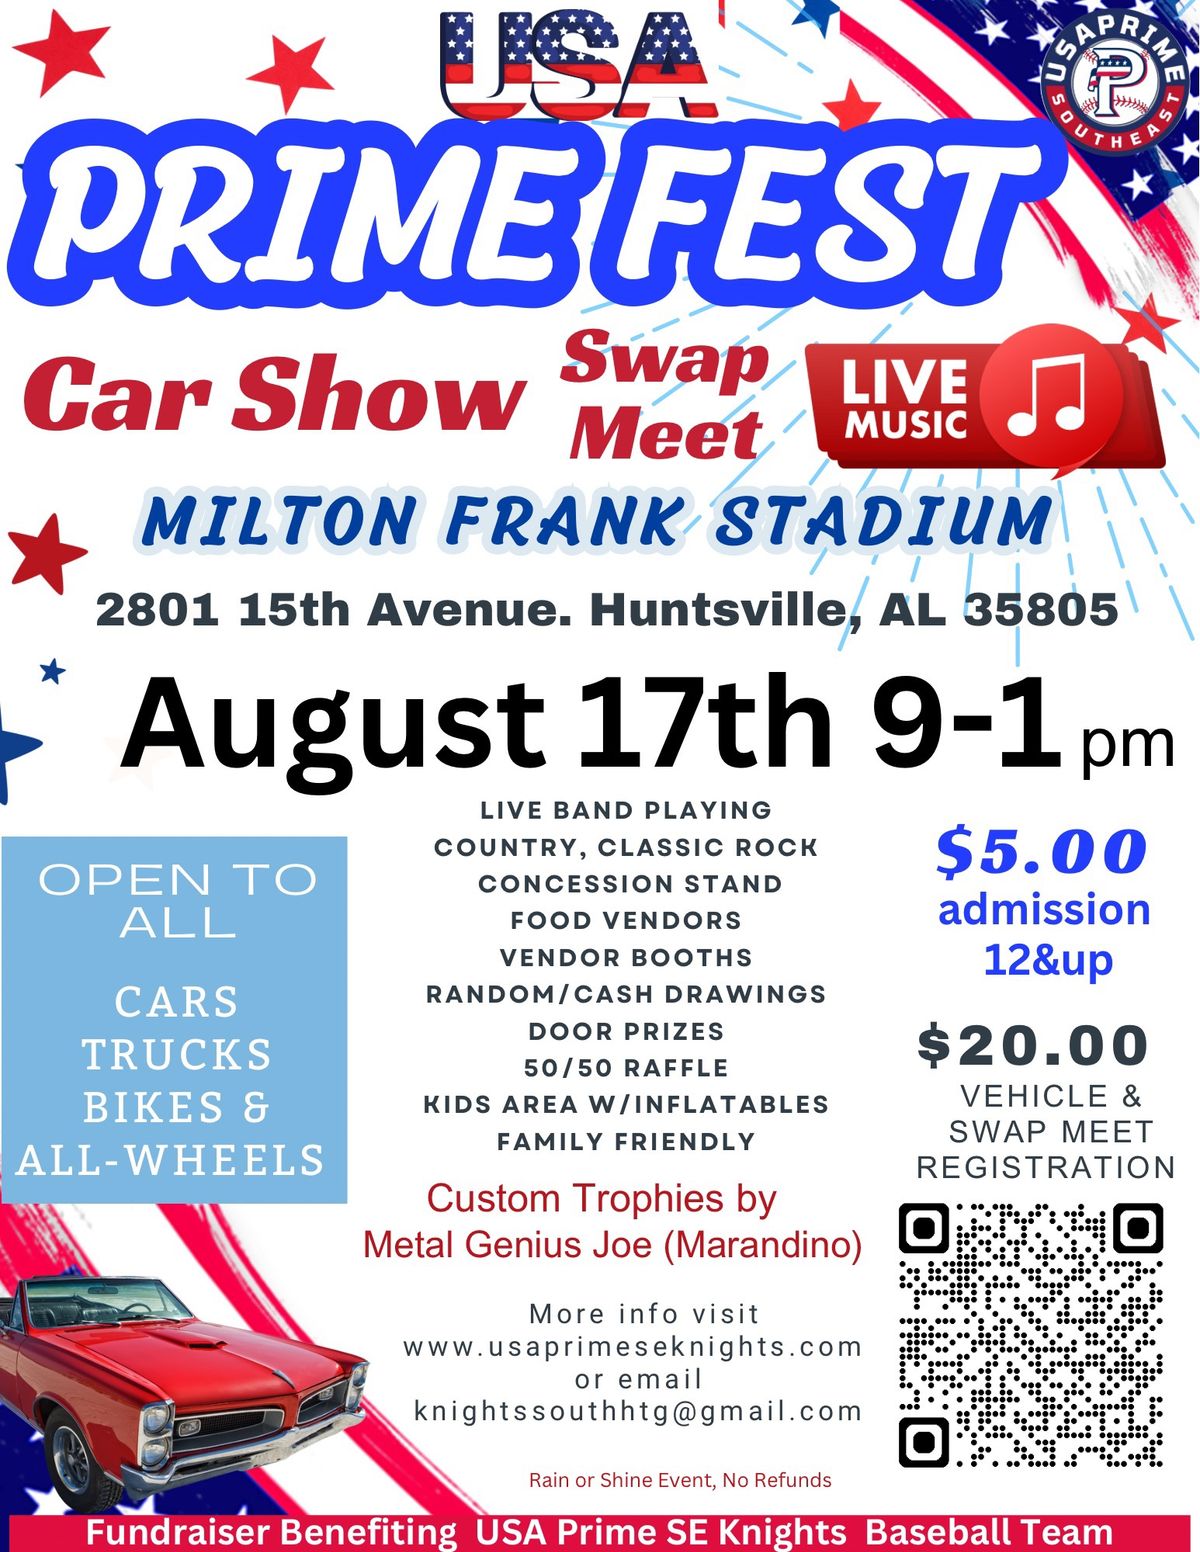 USA Prime Fest